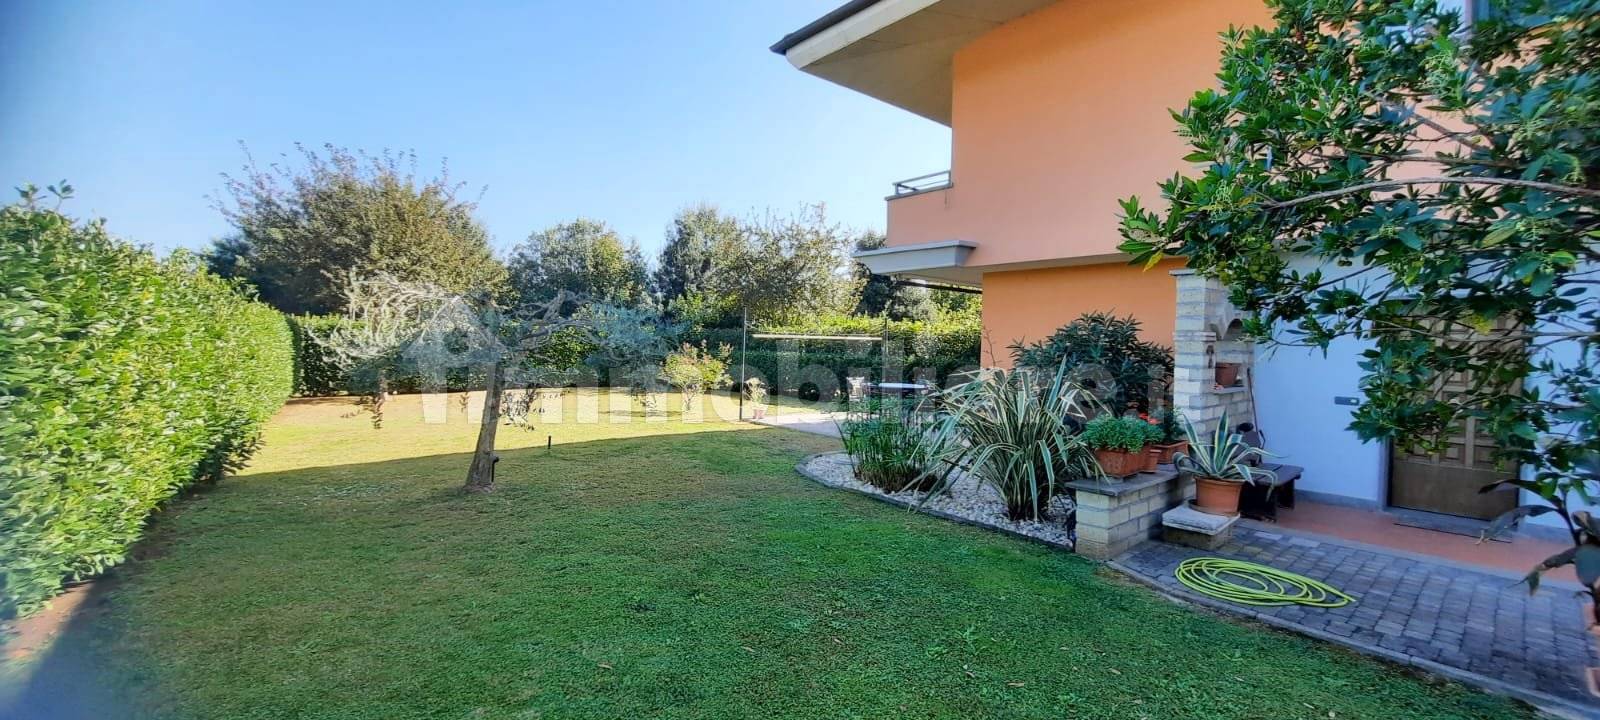 Case in vendita in Via Terre dei Consoli, Monterosi - Immobiliare.it